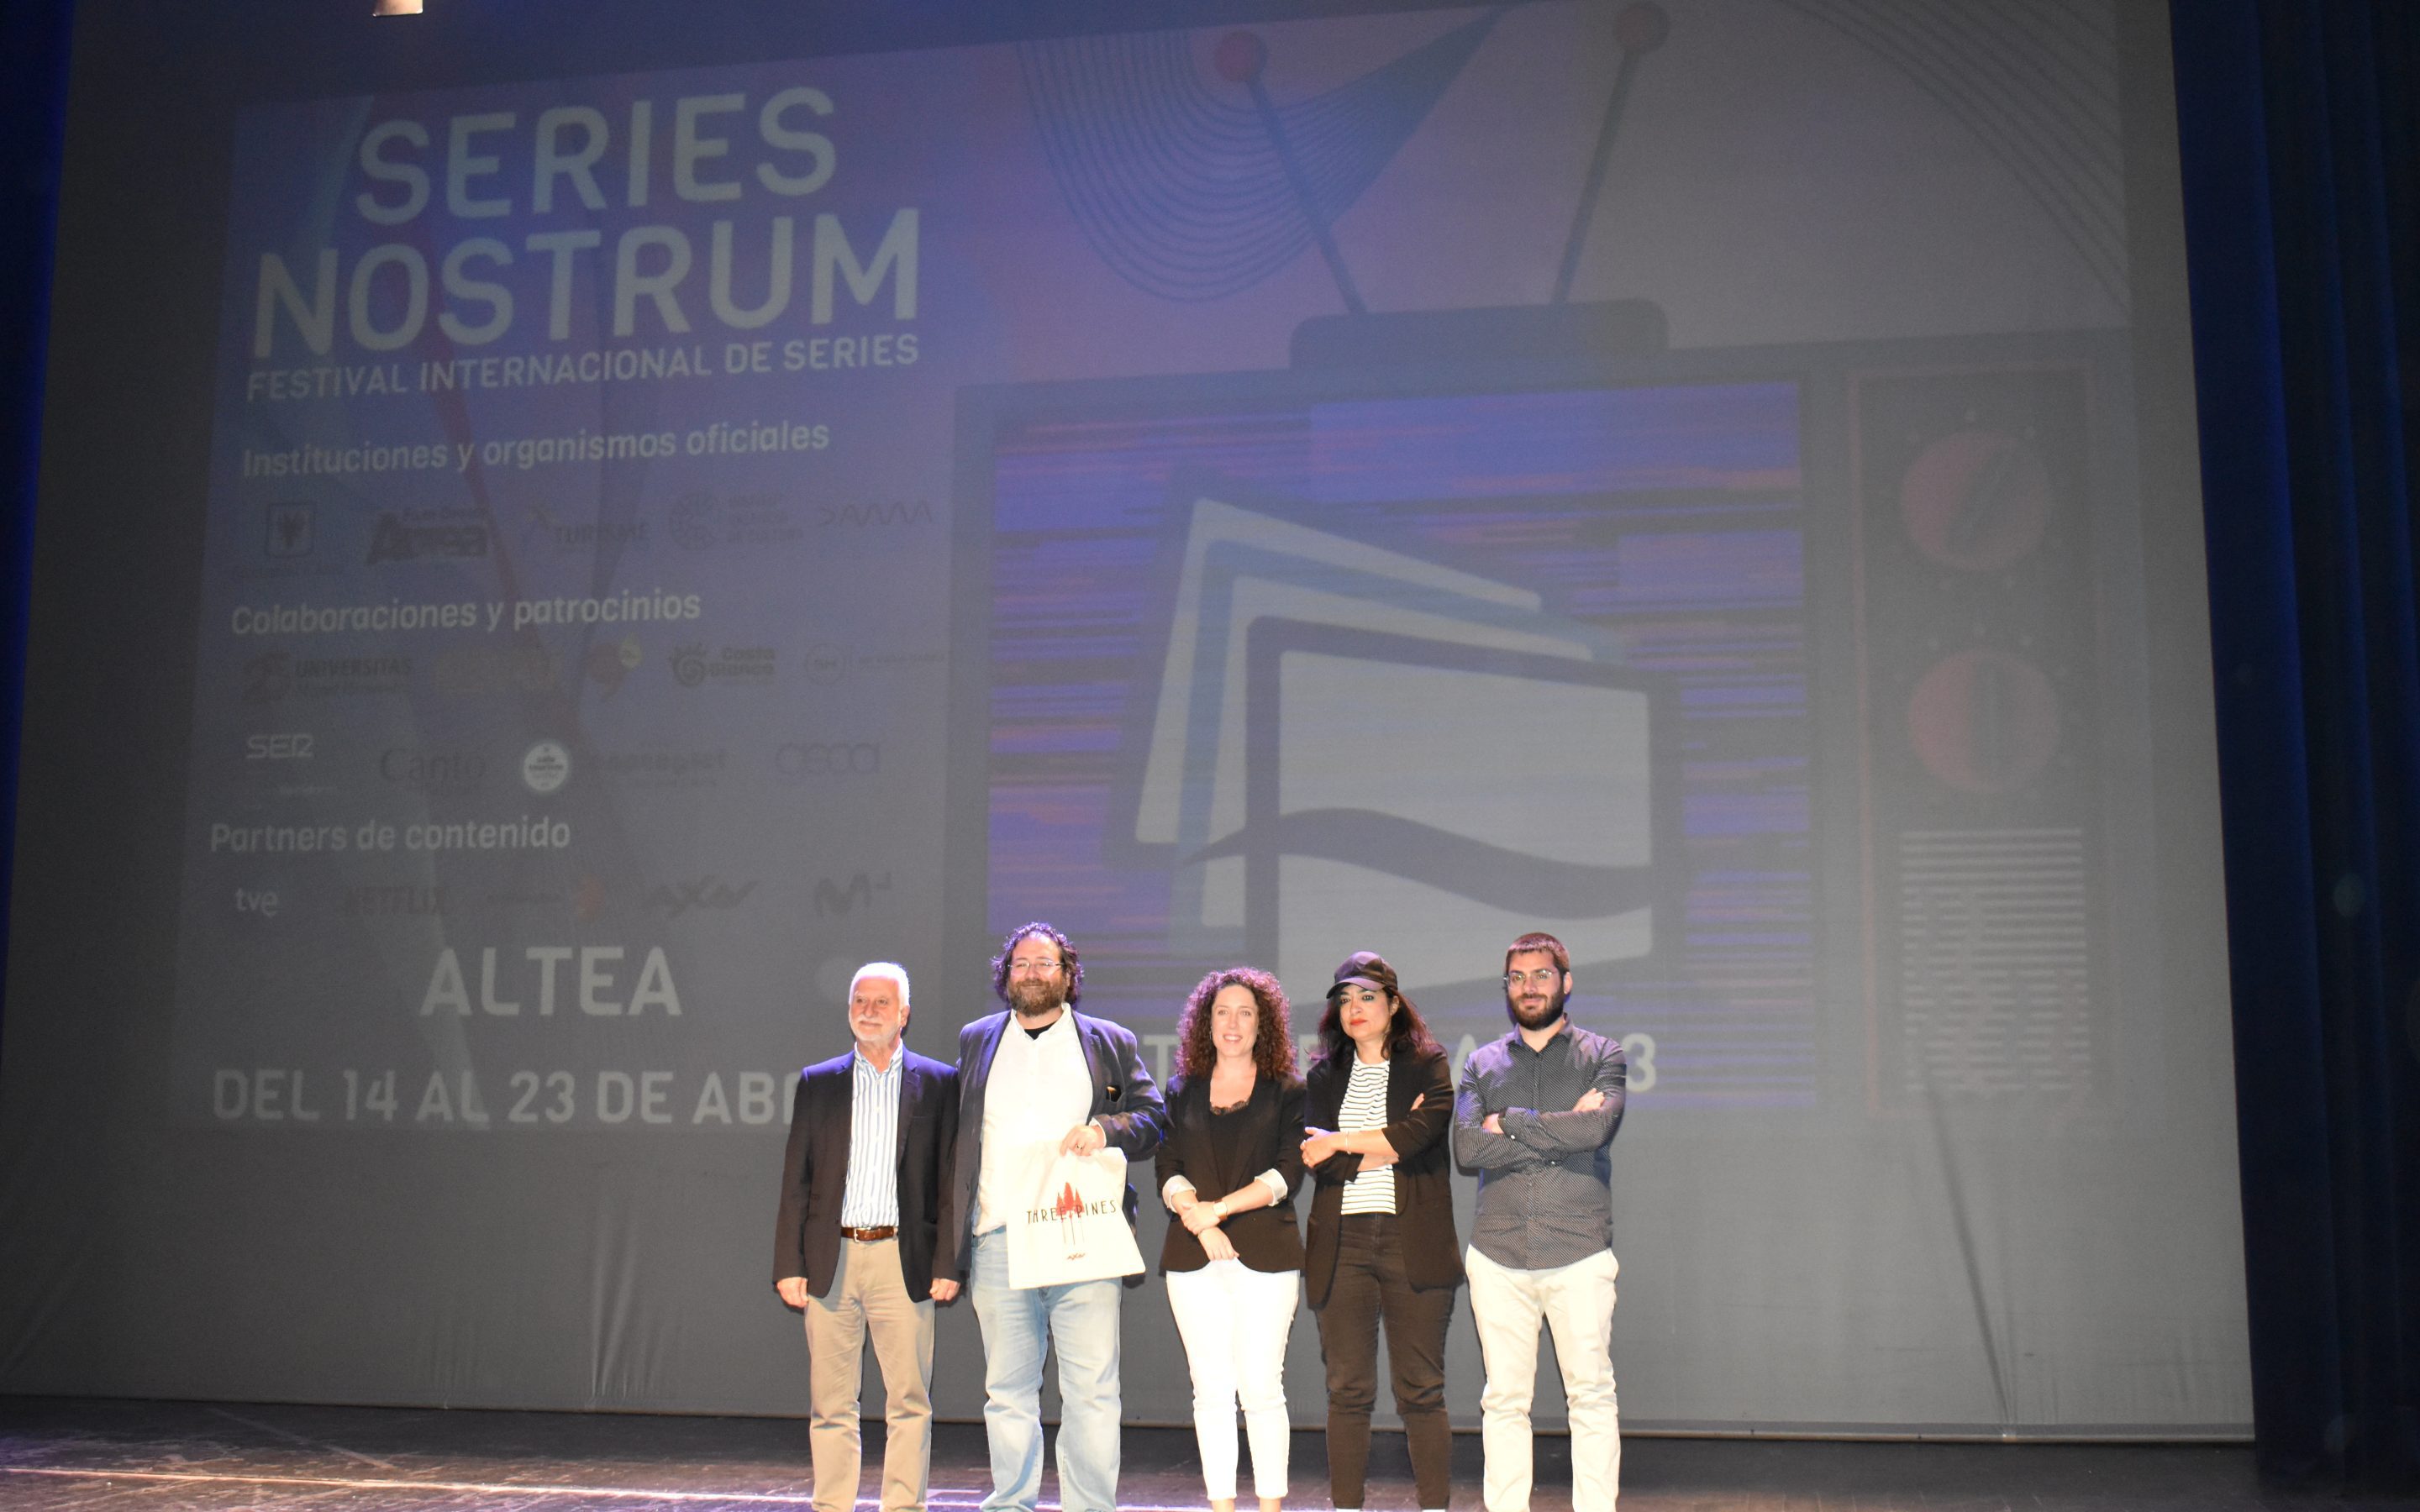 Series Nostrum estrena la seua tercera temporada amb la projecció de ‘Three Pines’ (AXN) abans de la seua estrena a Espanya